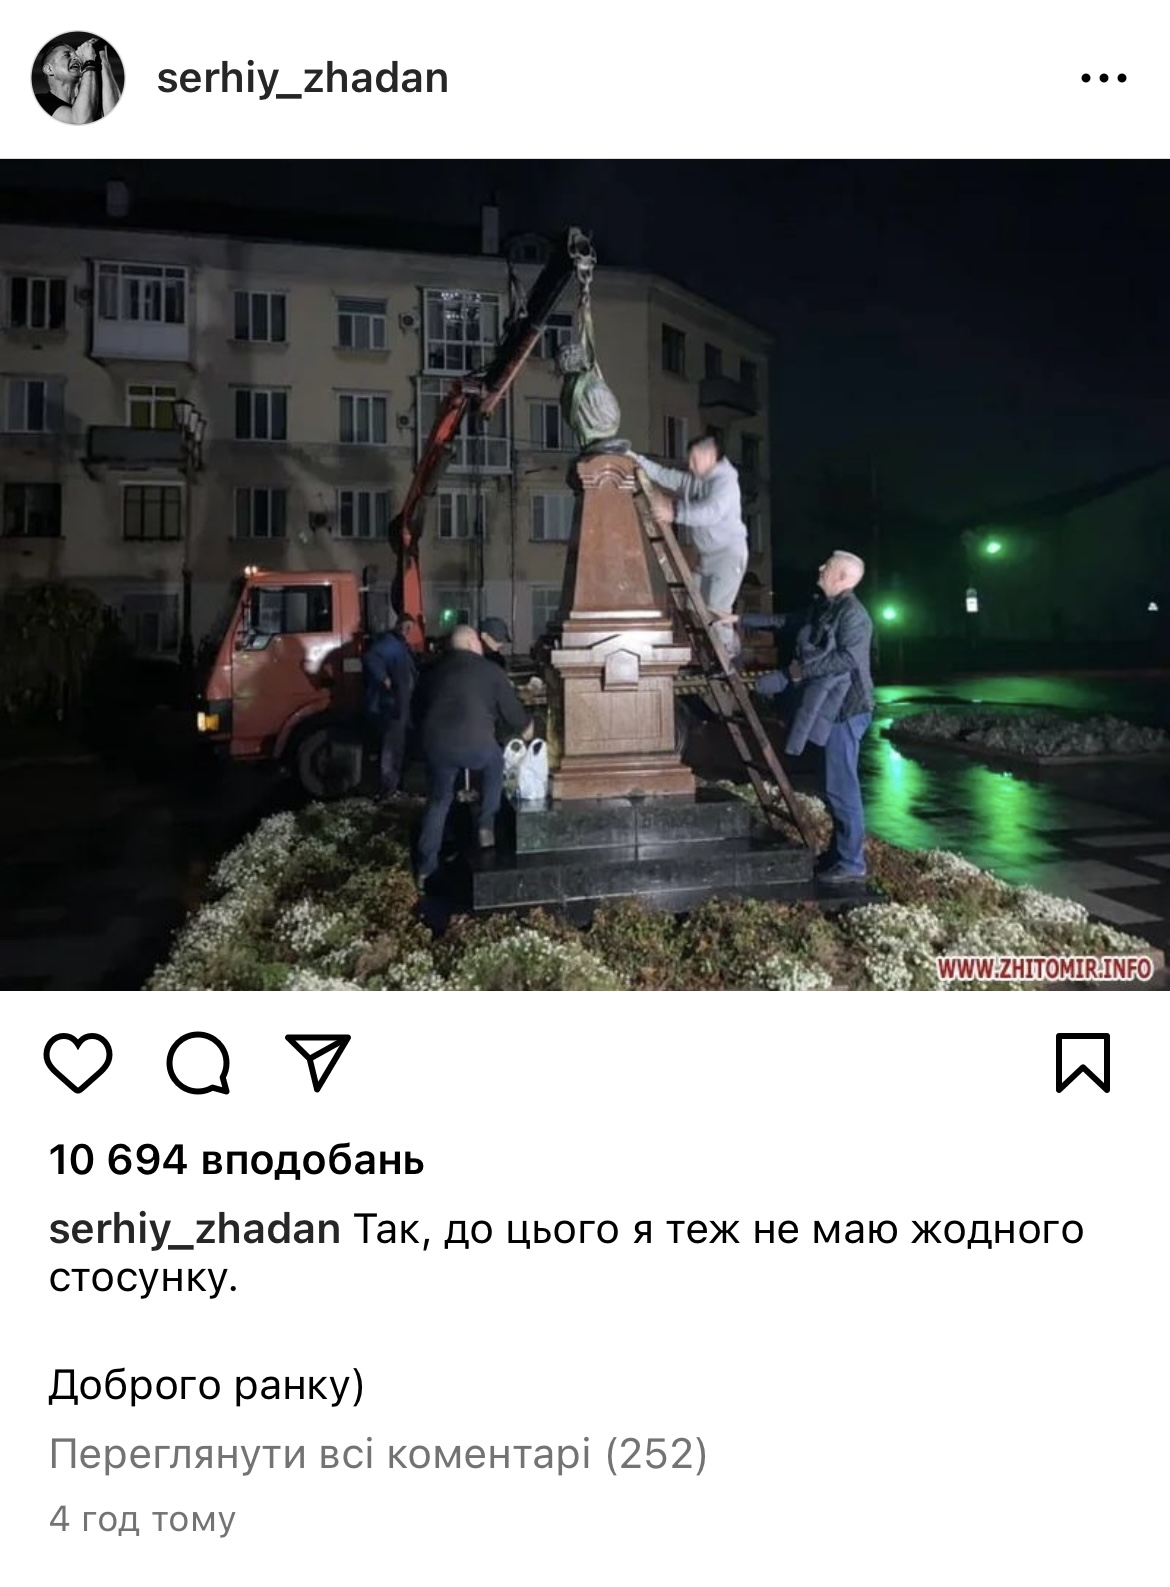 "Не маю до цього жодного стосунку": Жадан сфотографувався на фоні пам’ятника Пушкіну в Житомирі, після чого його знесли